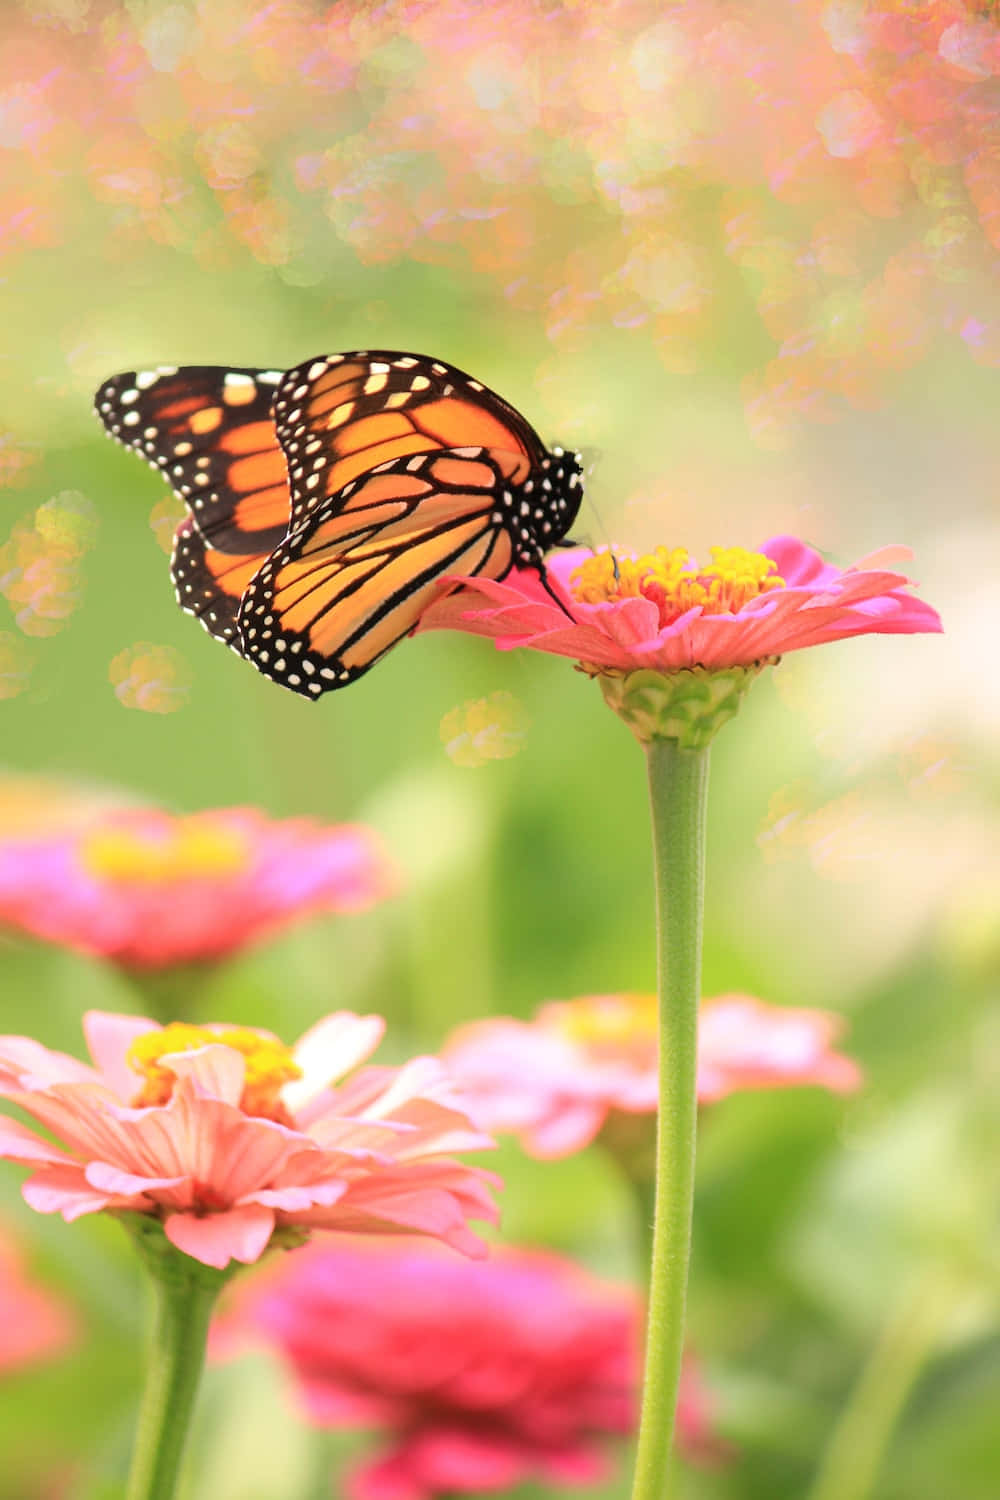 Unabellissima Farfalla Nera E Rosa Prende Il Volo In Un Giardino Baciato Dal Sole.